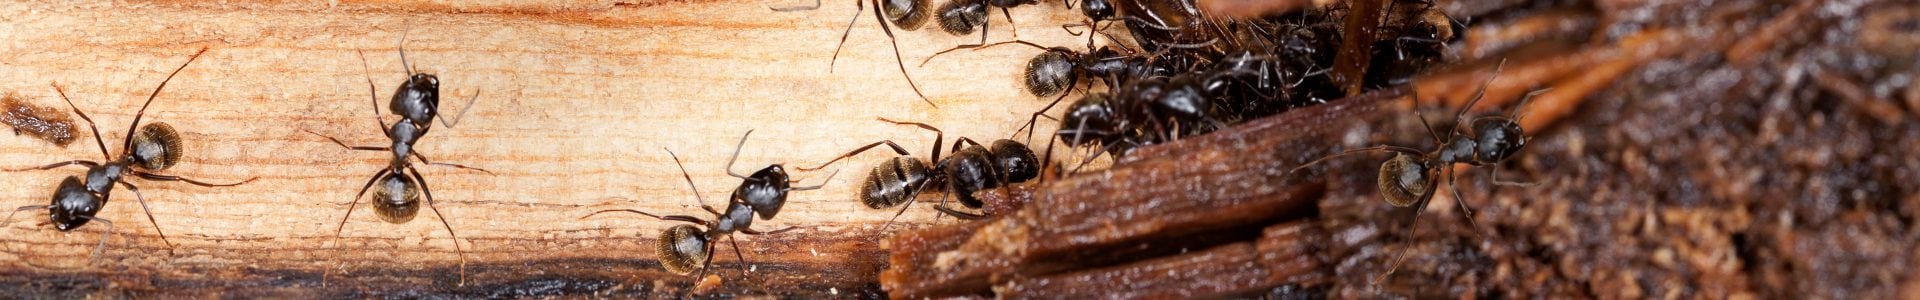 How Do I Prepare for Pest Control Services?